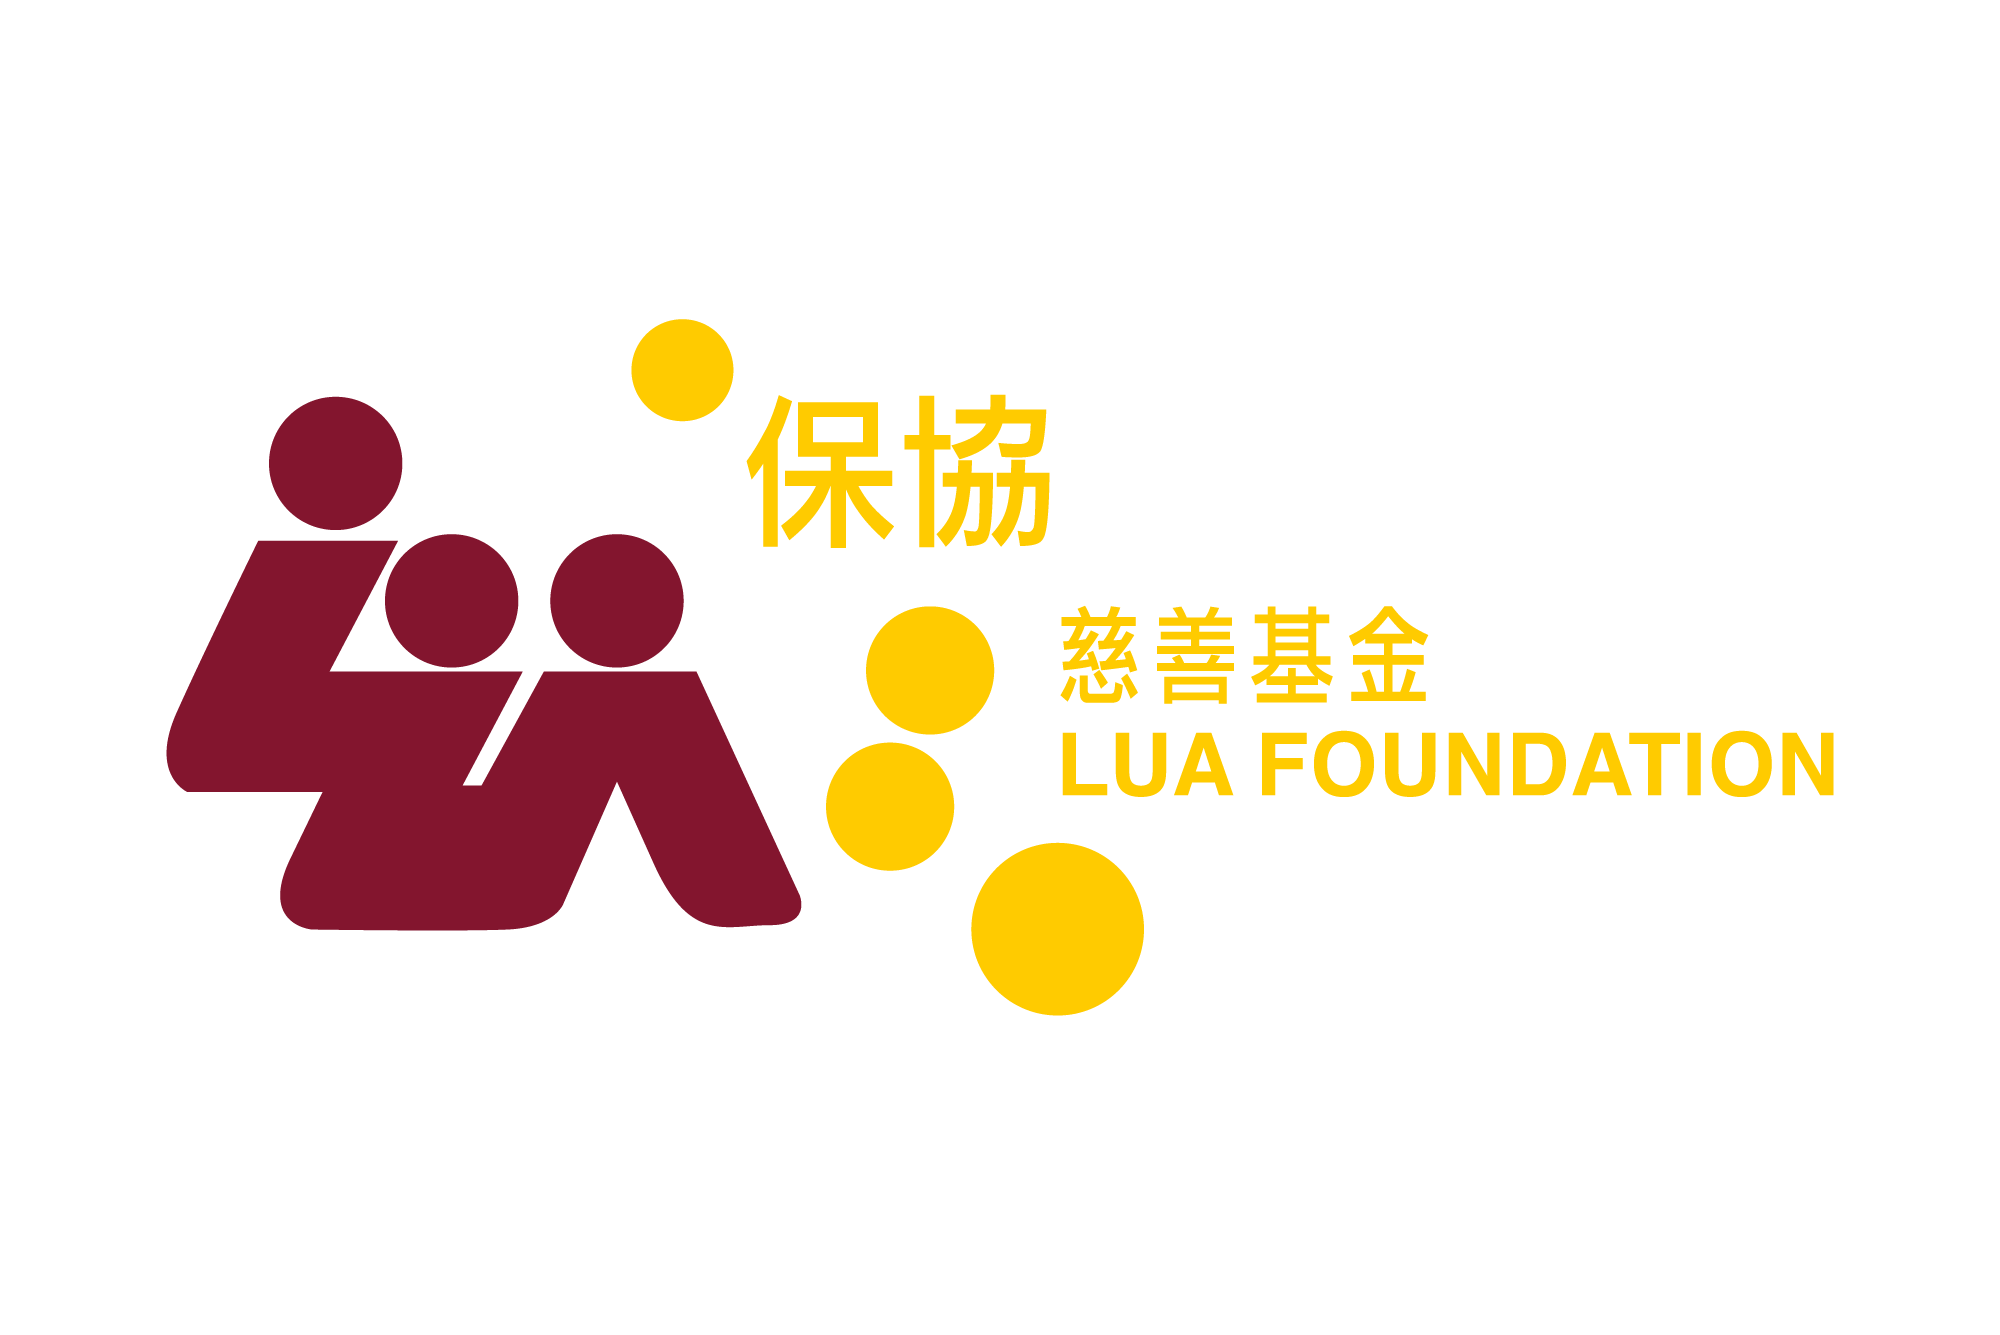 香港人壽保險從業員協會慈善基金有限公司 LUA FOUNDATION LIMITED 